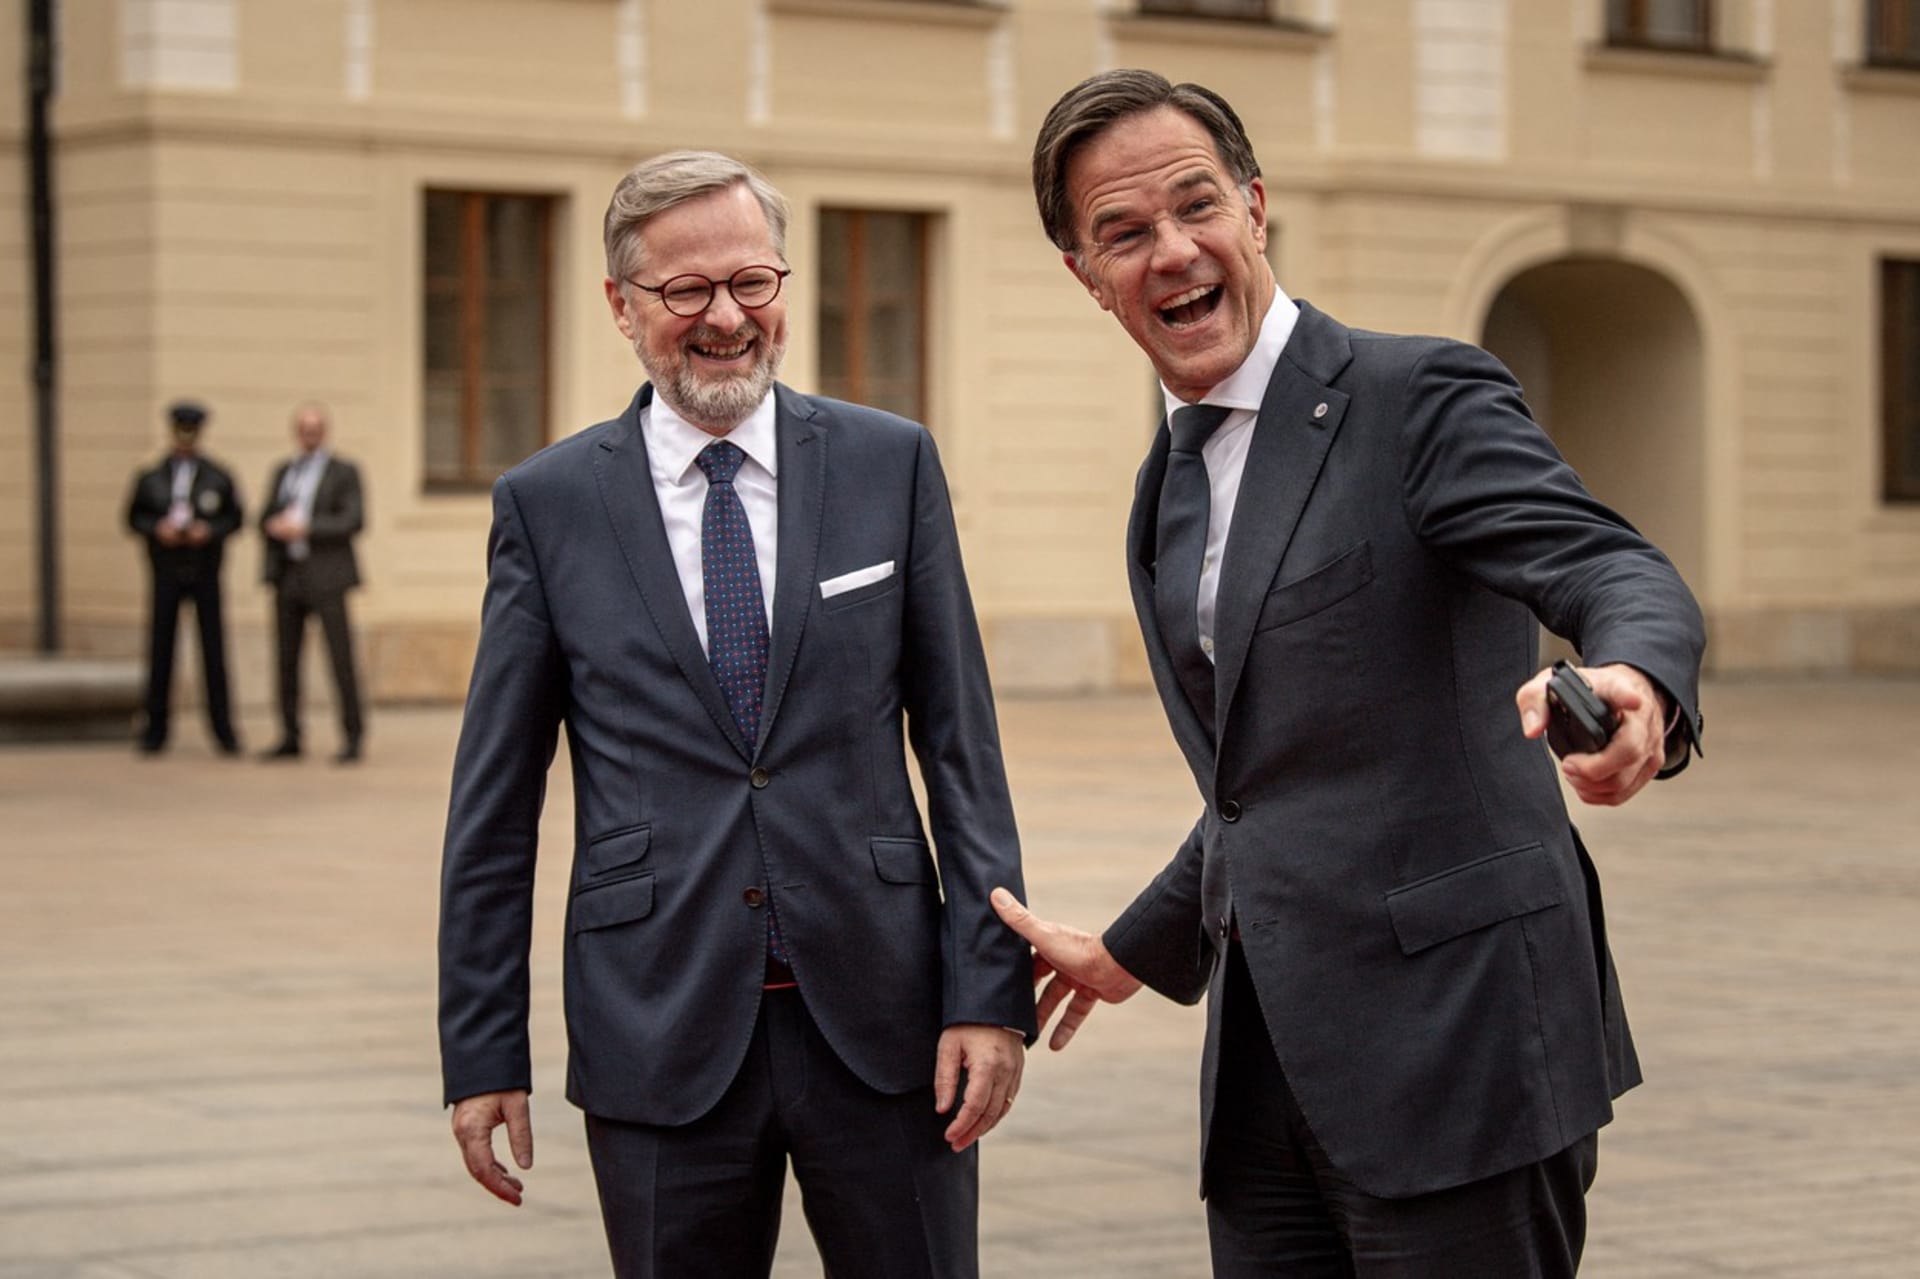 Nizozemský premiér Mark Rutte předvedl při příchodu na Pražský hrad svůj široký úsměv. Svým žoviálním vystupováním rozesmál i českého předsedu vlády Petra Fialu.